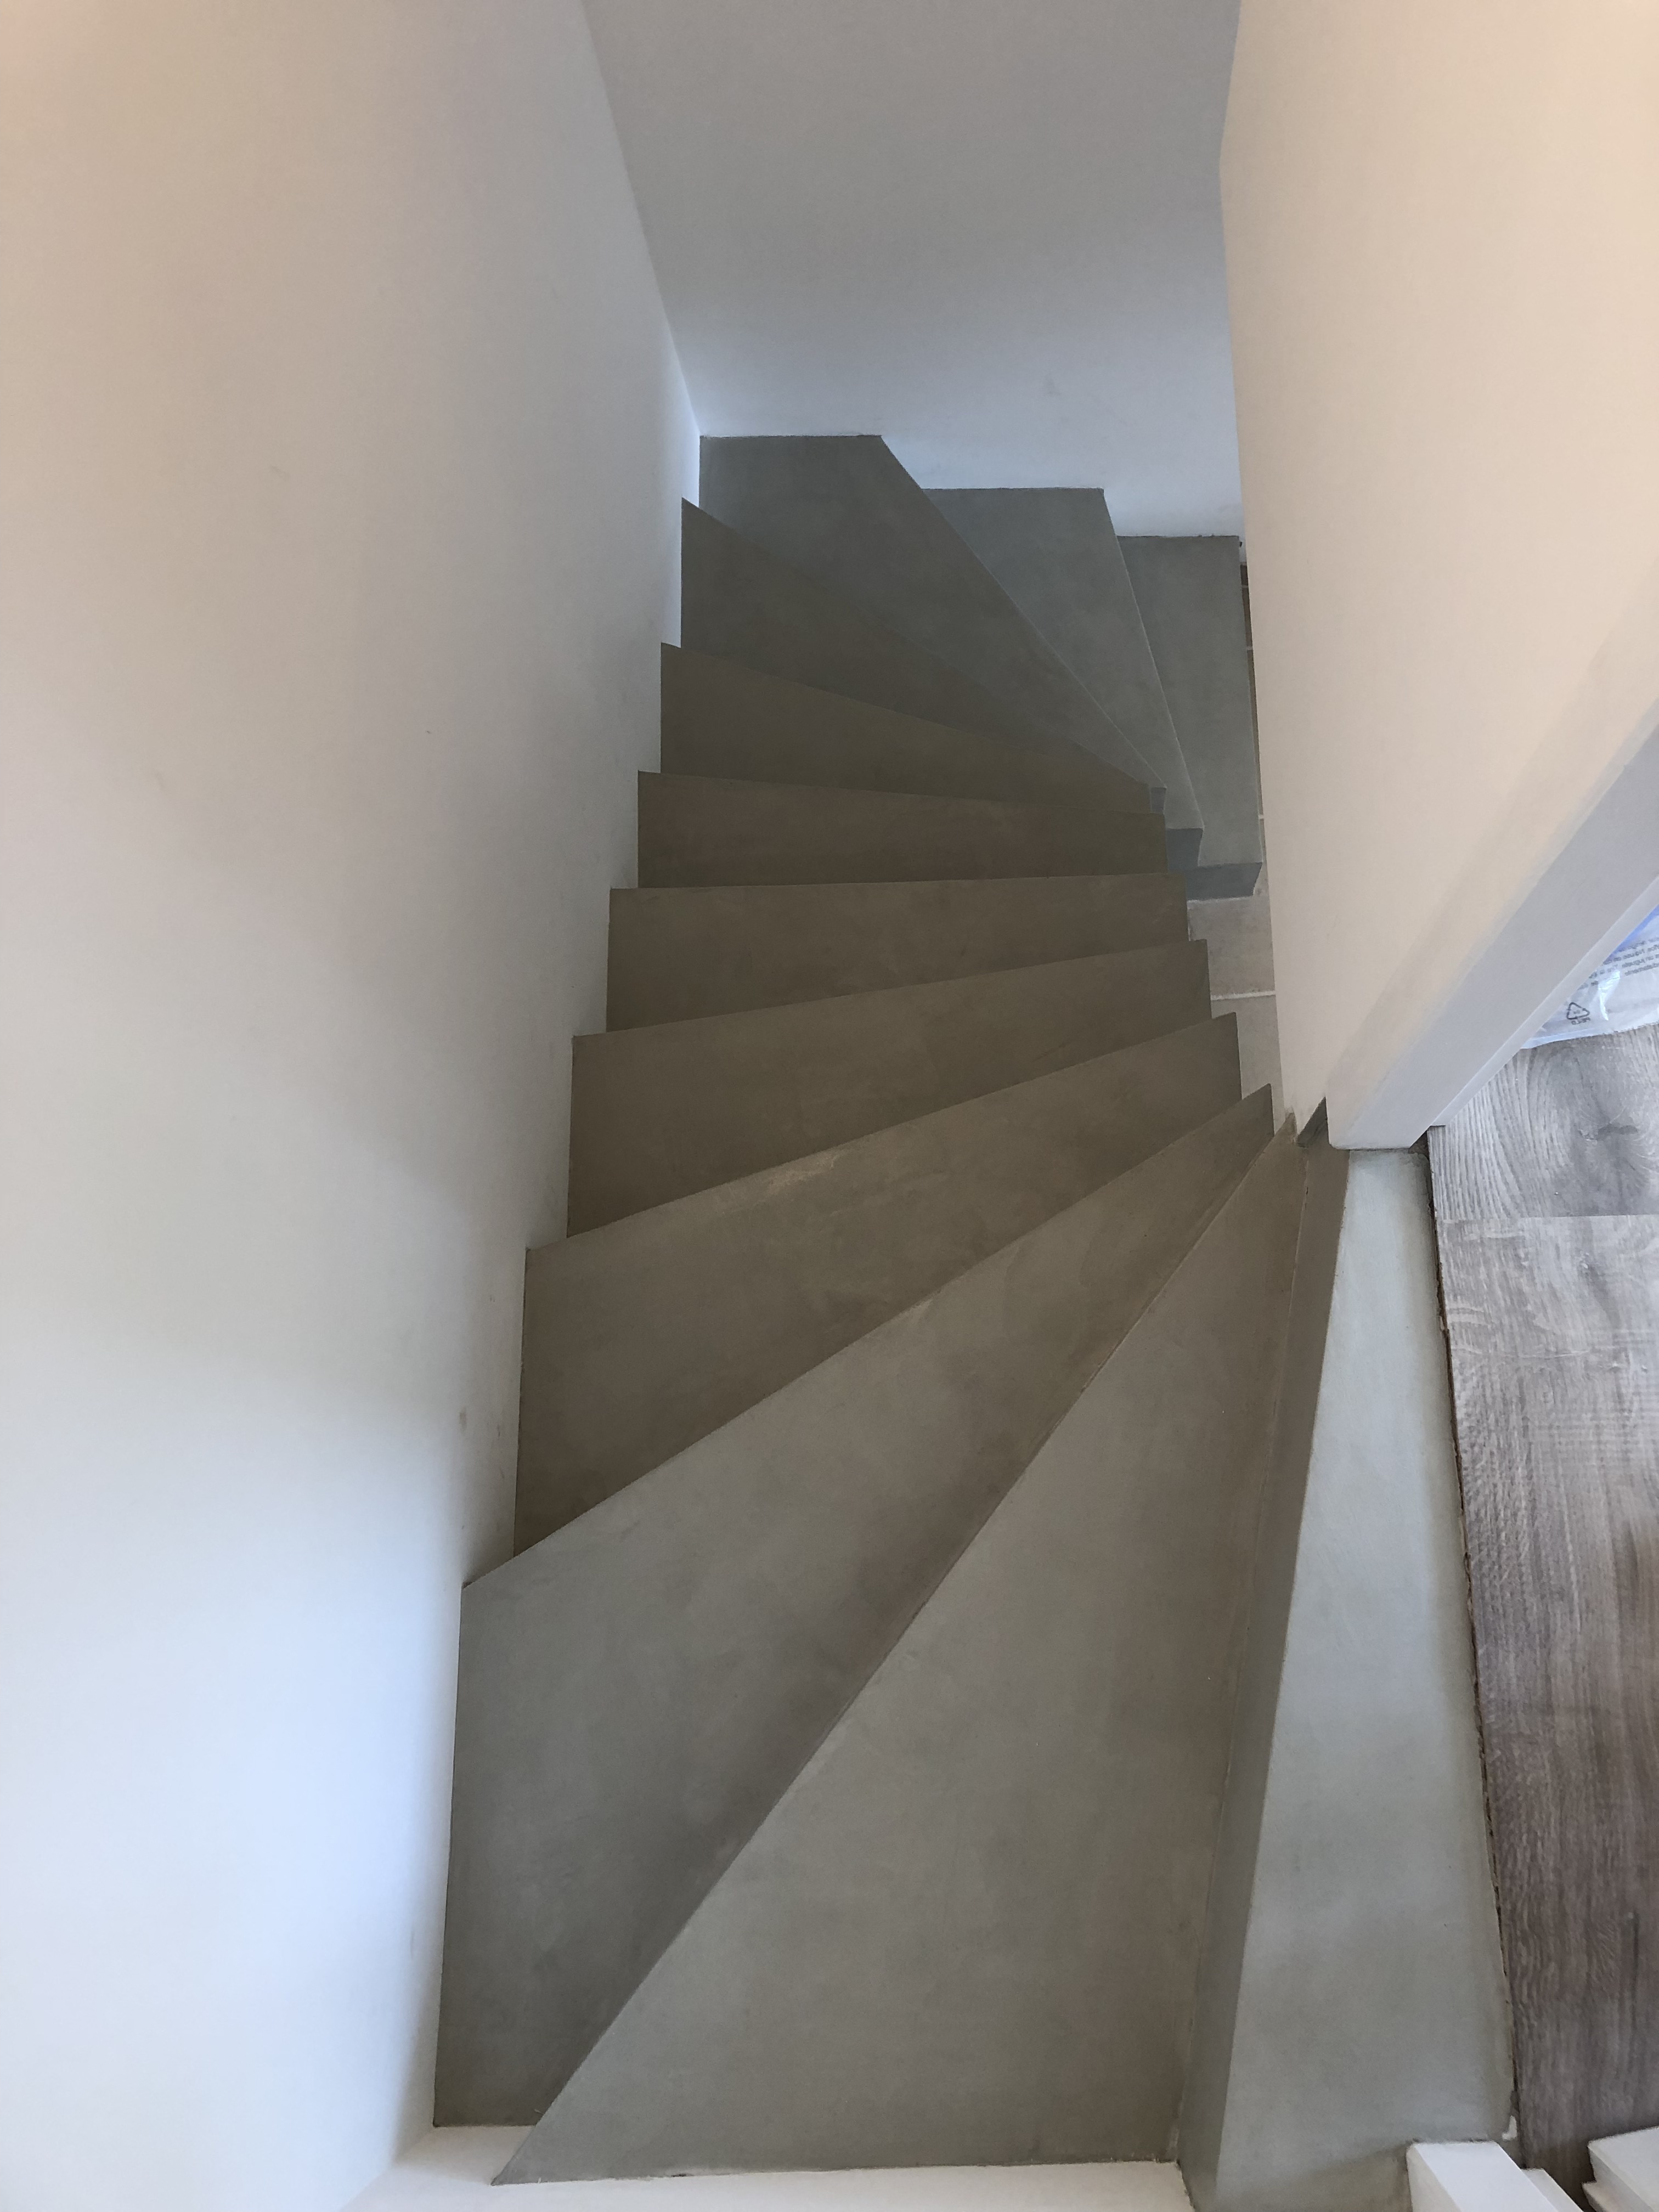 audacieux escalier à paillasse deux quart tournant en béton ciré vernis soyeux couleur gris perle à Royan en Charente maritime dans la région nouvelle aquitaine pour un particulier